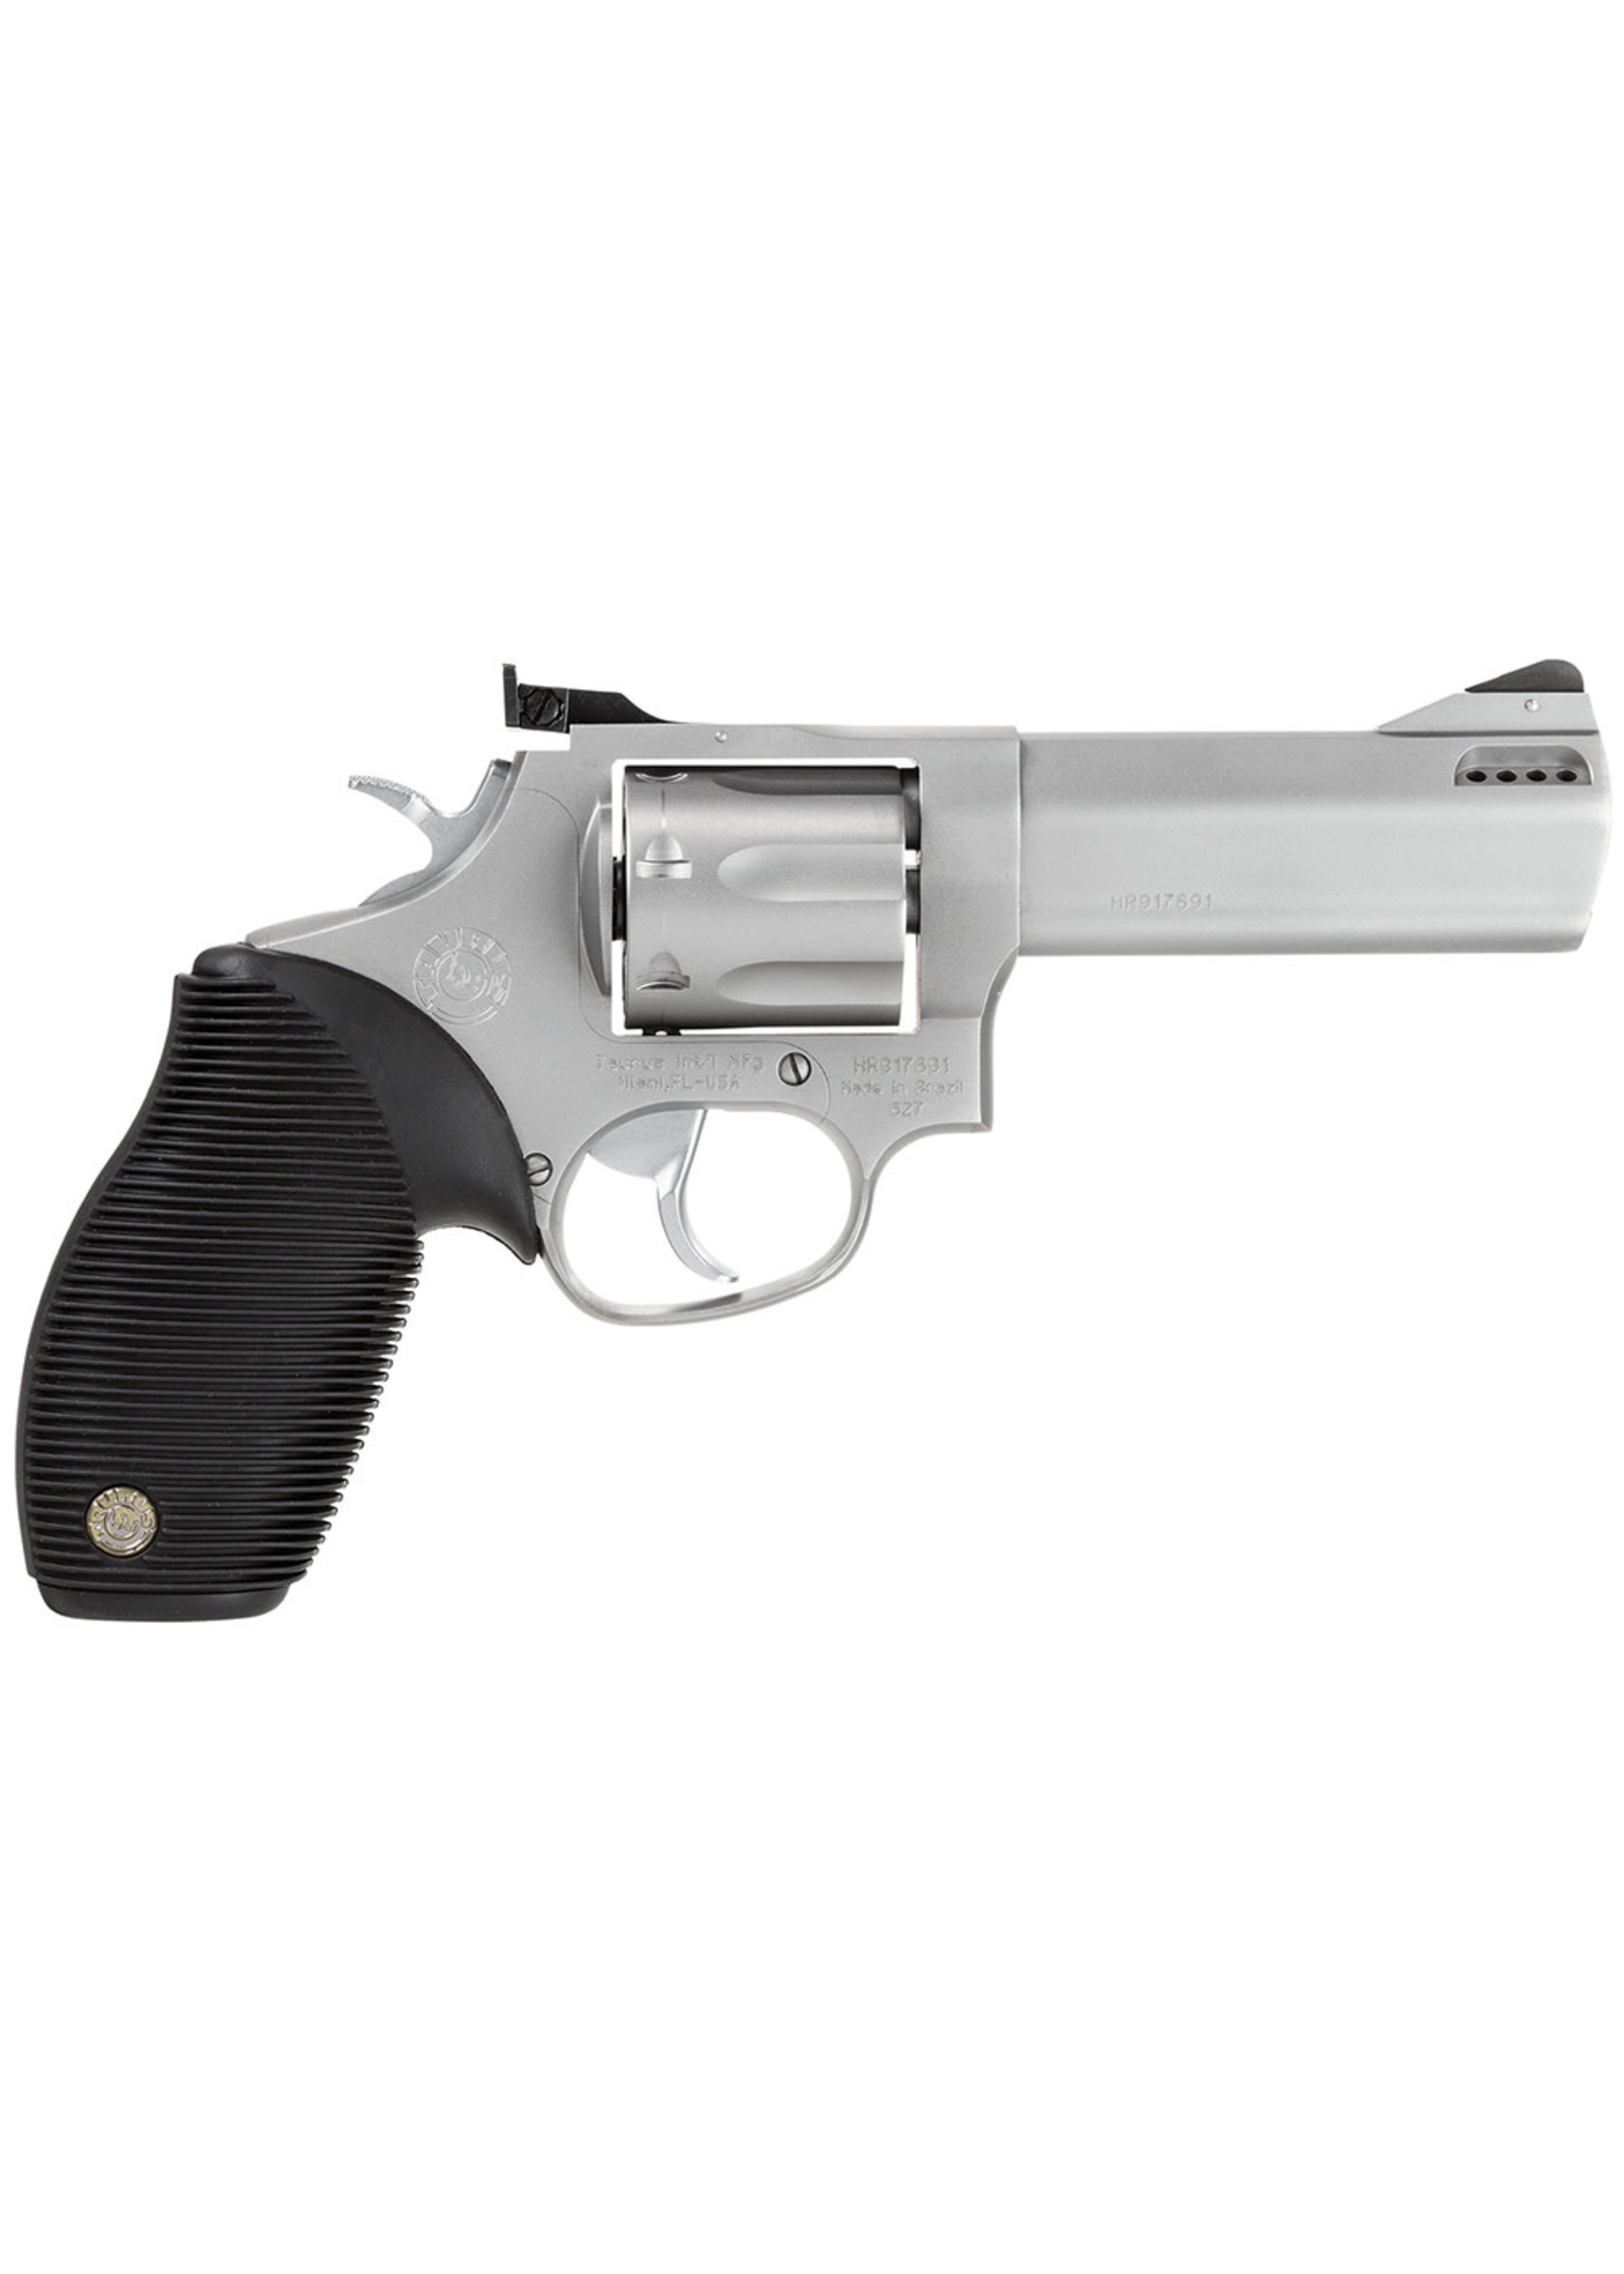 Taurus Taurus Tracker 627 Revolver, 357 Mag 7rd, 4", Matte Stainless Steel, Black Rubber Grip